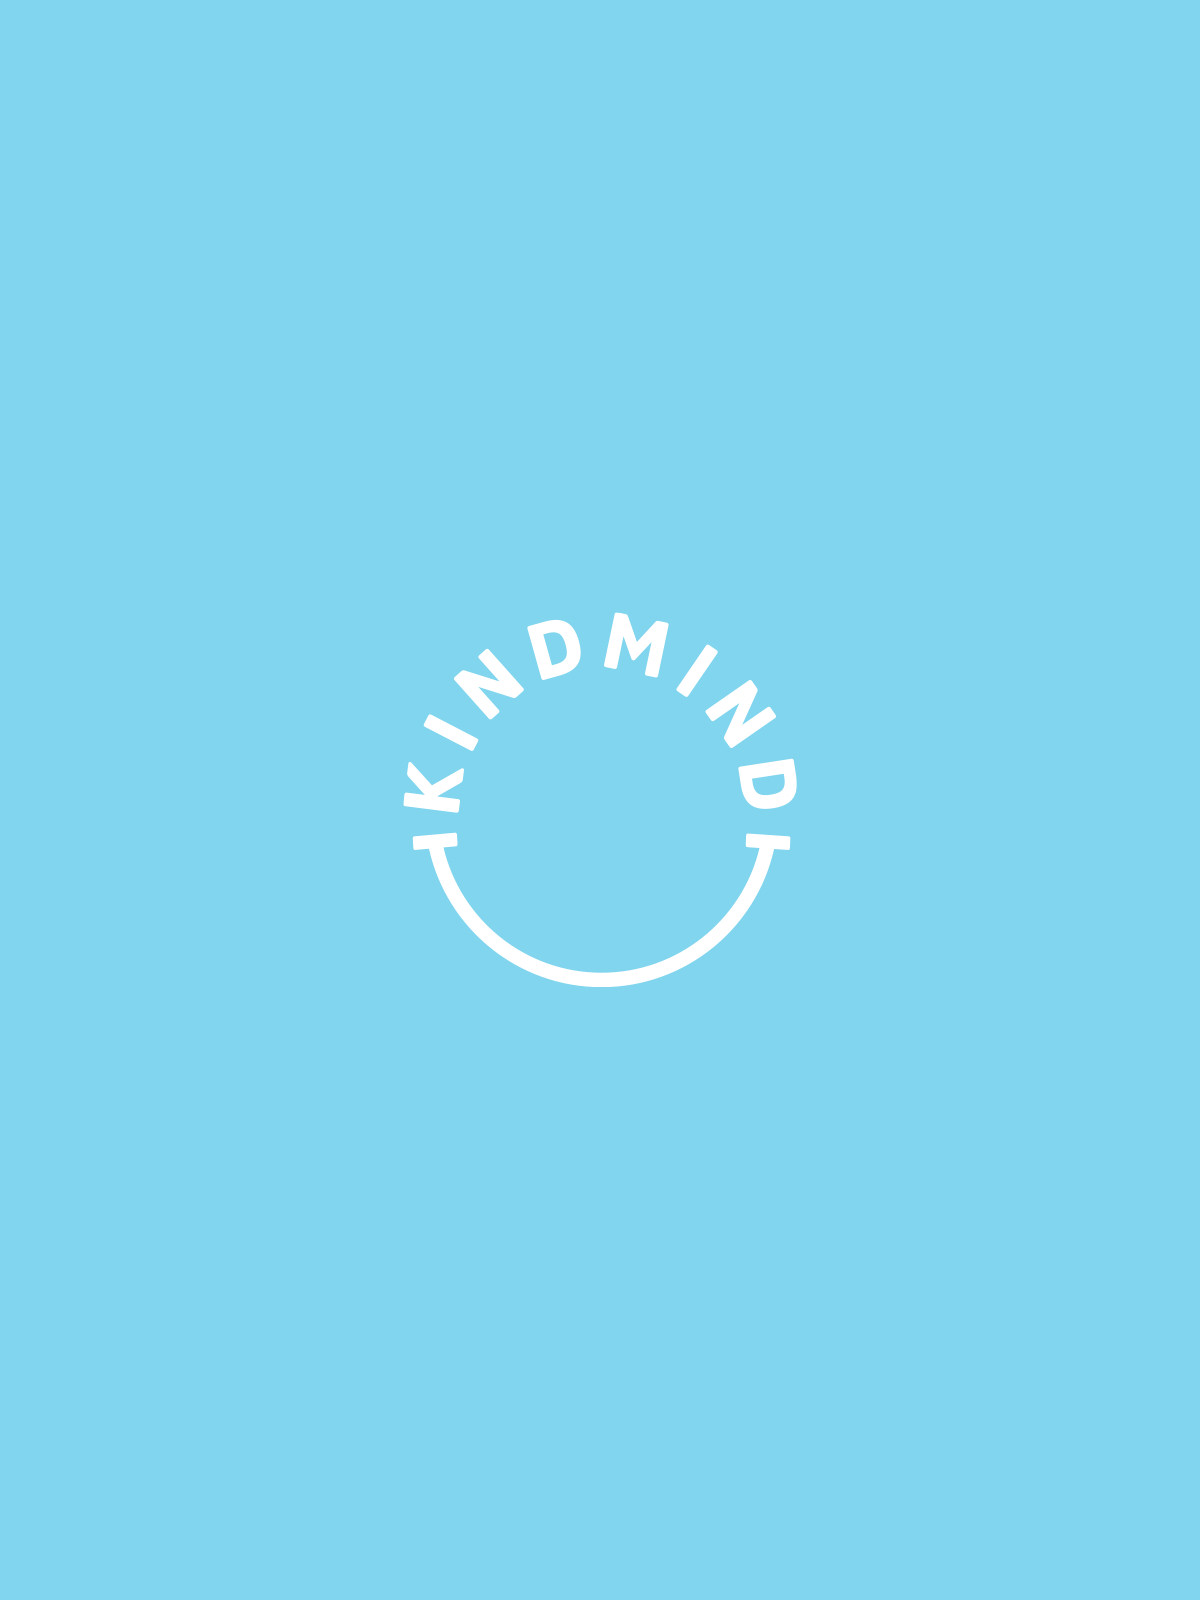 Brand logo design for Kind Mind by Cheltenham Design Agency Edge Design Workshop